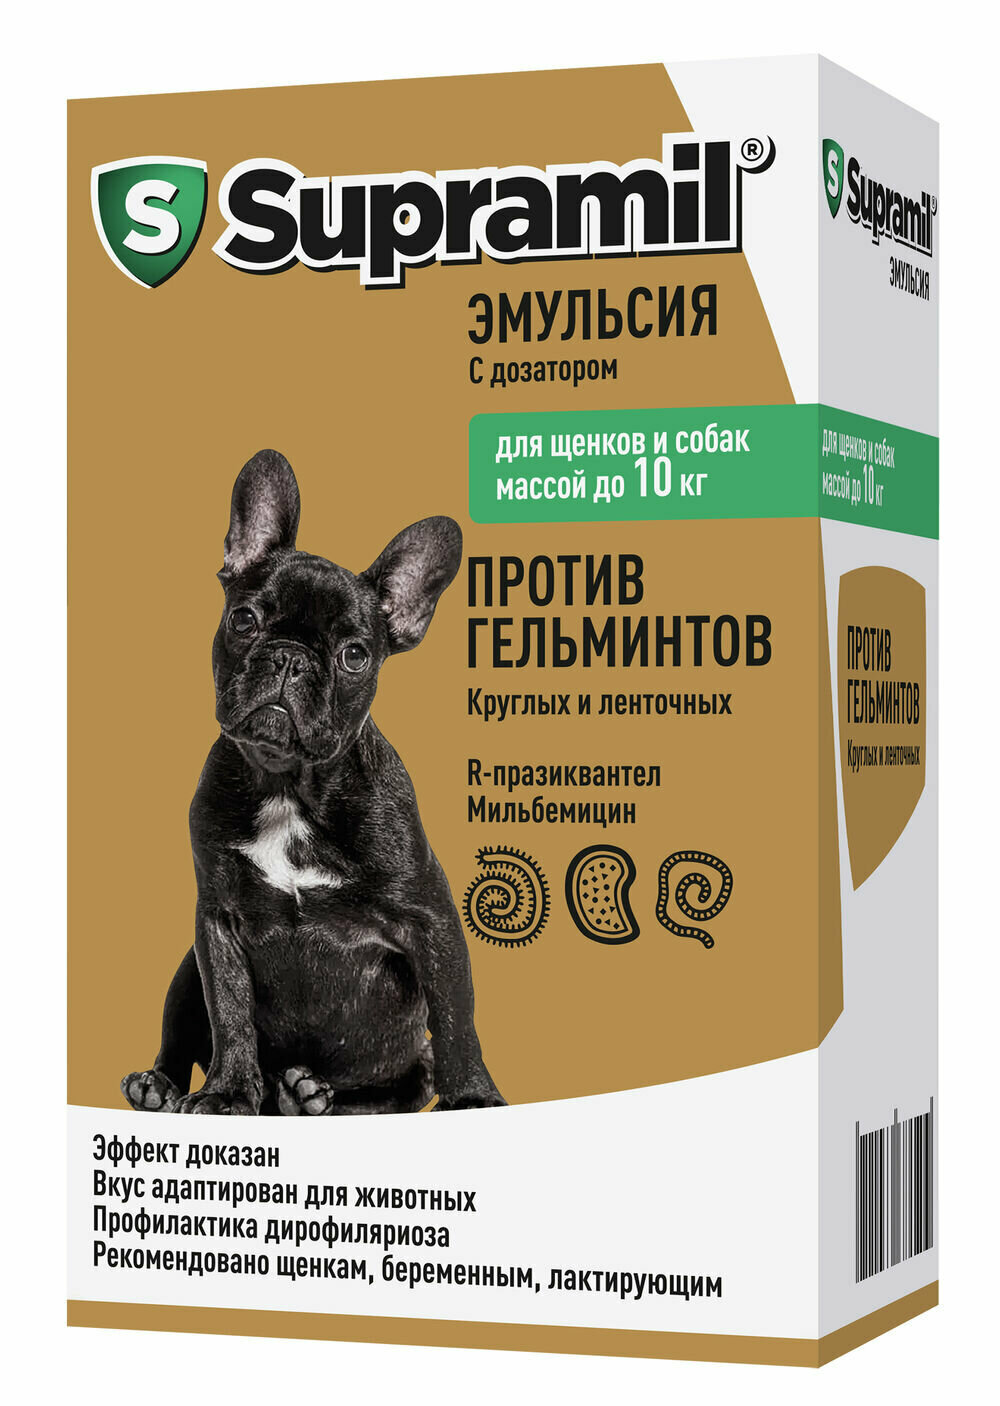 Астрафарм Supramil  для щенков и собак до 10 кг,5 мл